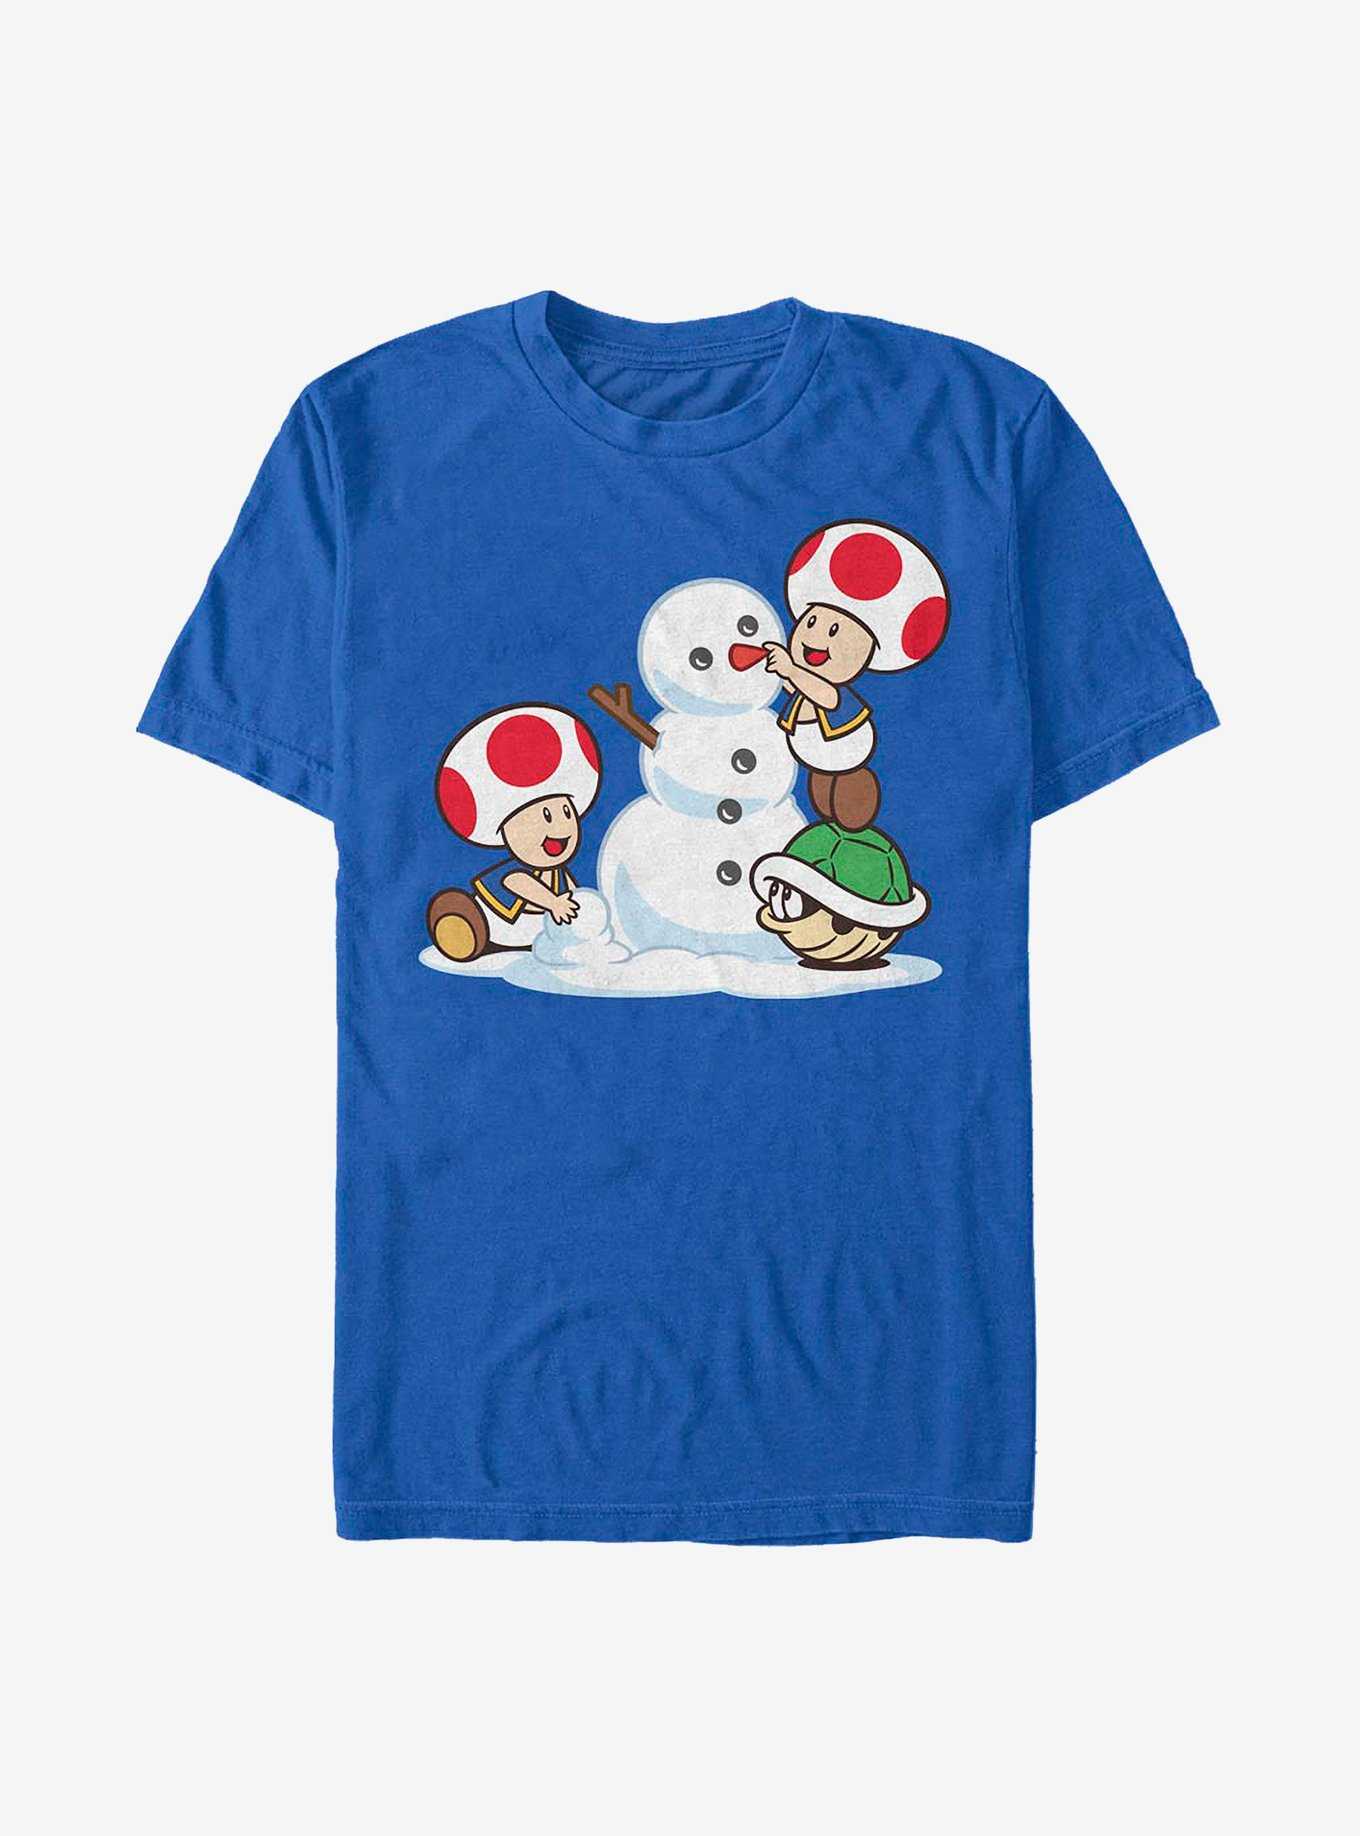 Nintendo Mario Frosty Toad T-Shirt, , hi-res